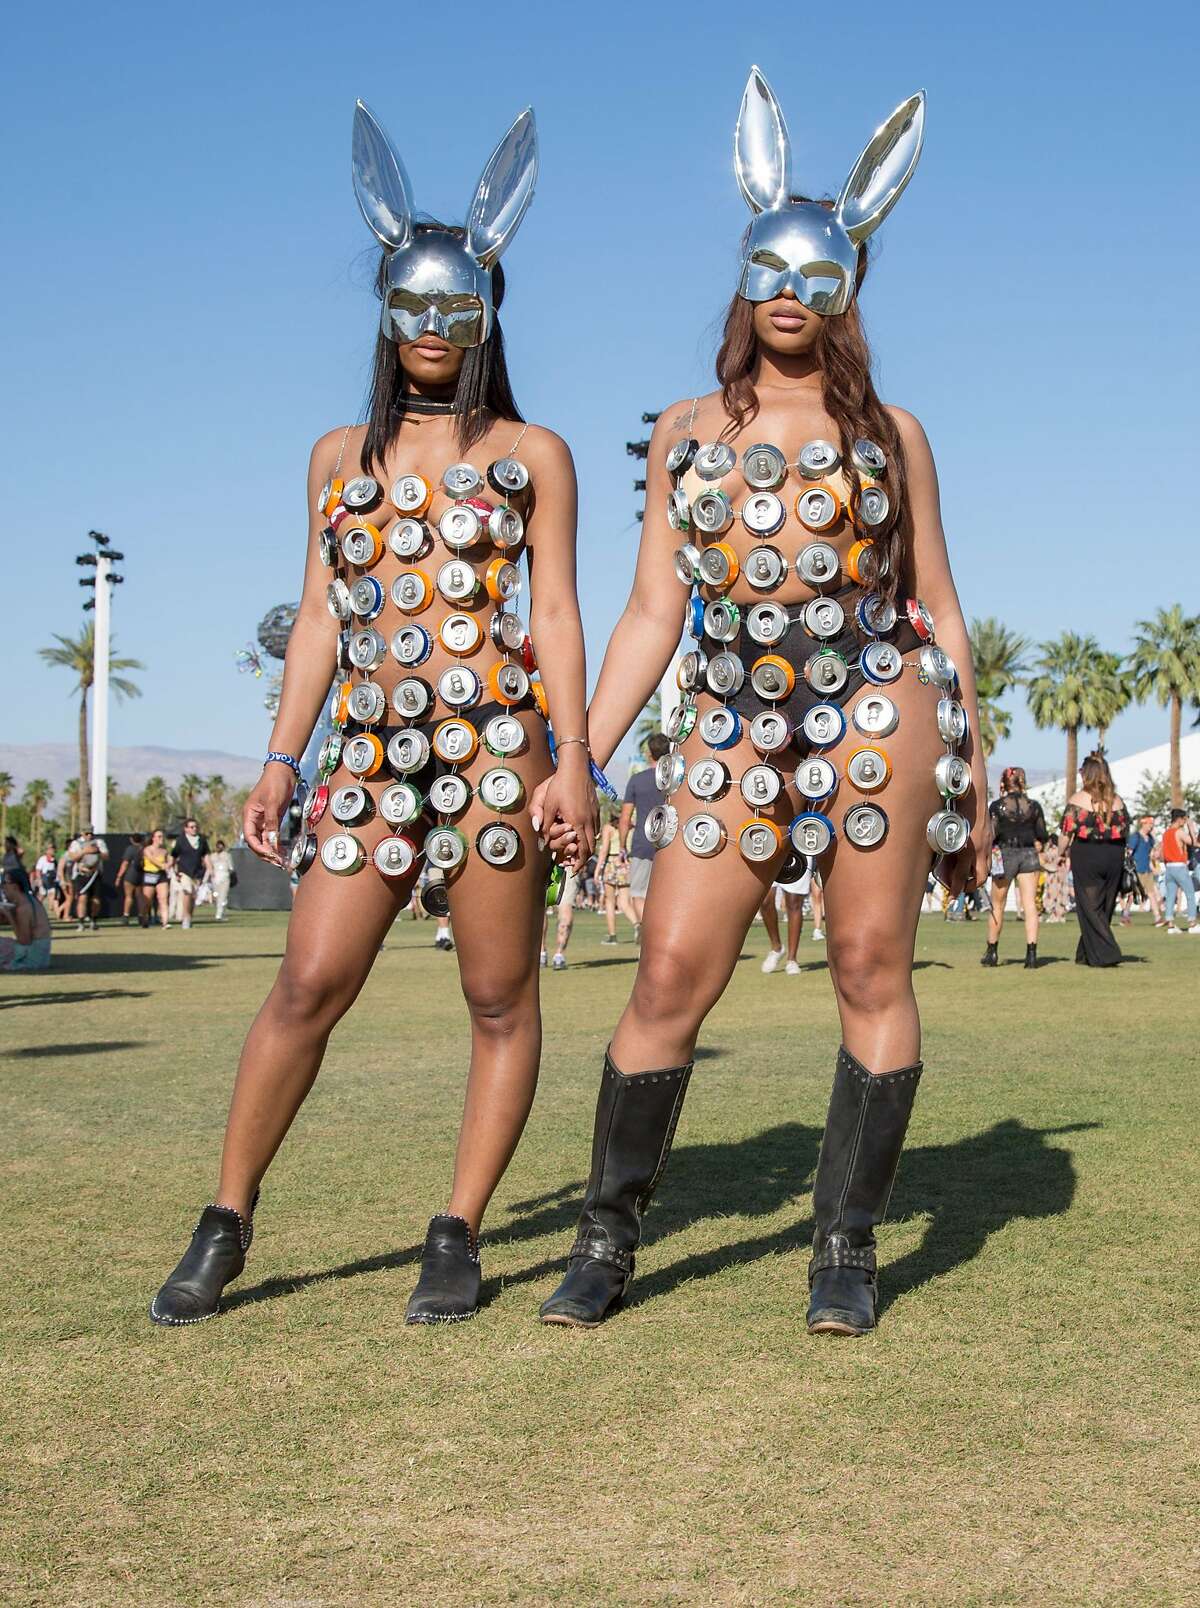 The wildest, weirdest, most risqué Coachella fashion